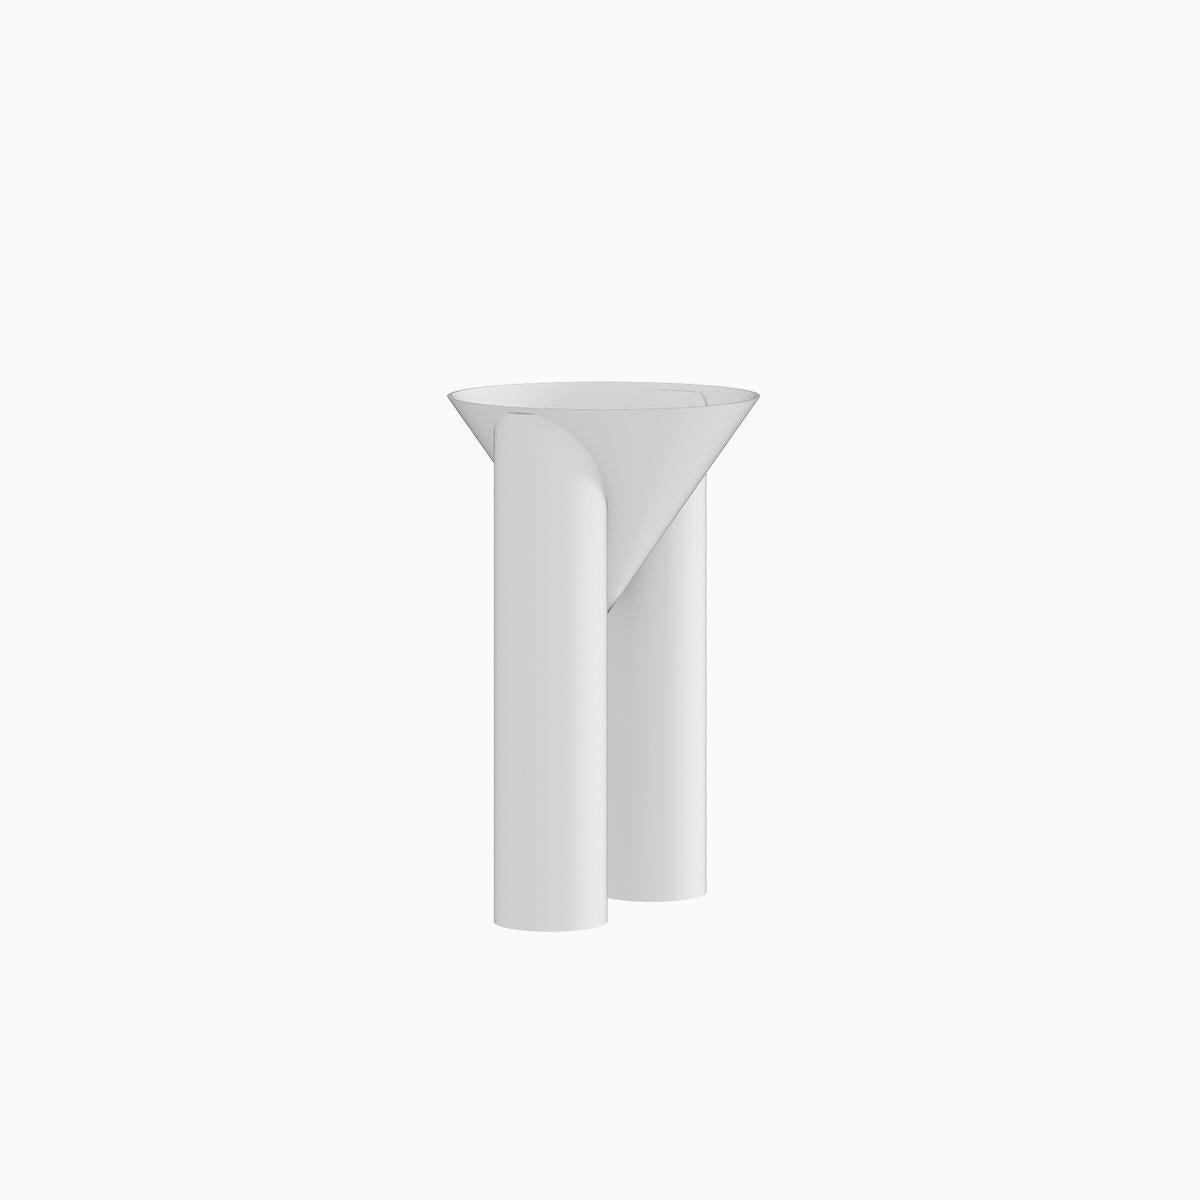 Die Tall Valet Vase wird von Hand aus Metall gefertigt und mit einer matten elektrostatischen Beschichtung versehen. Ihr Durchmesser kann individuell angepasst werden. 